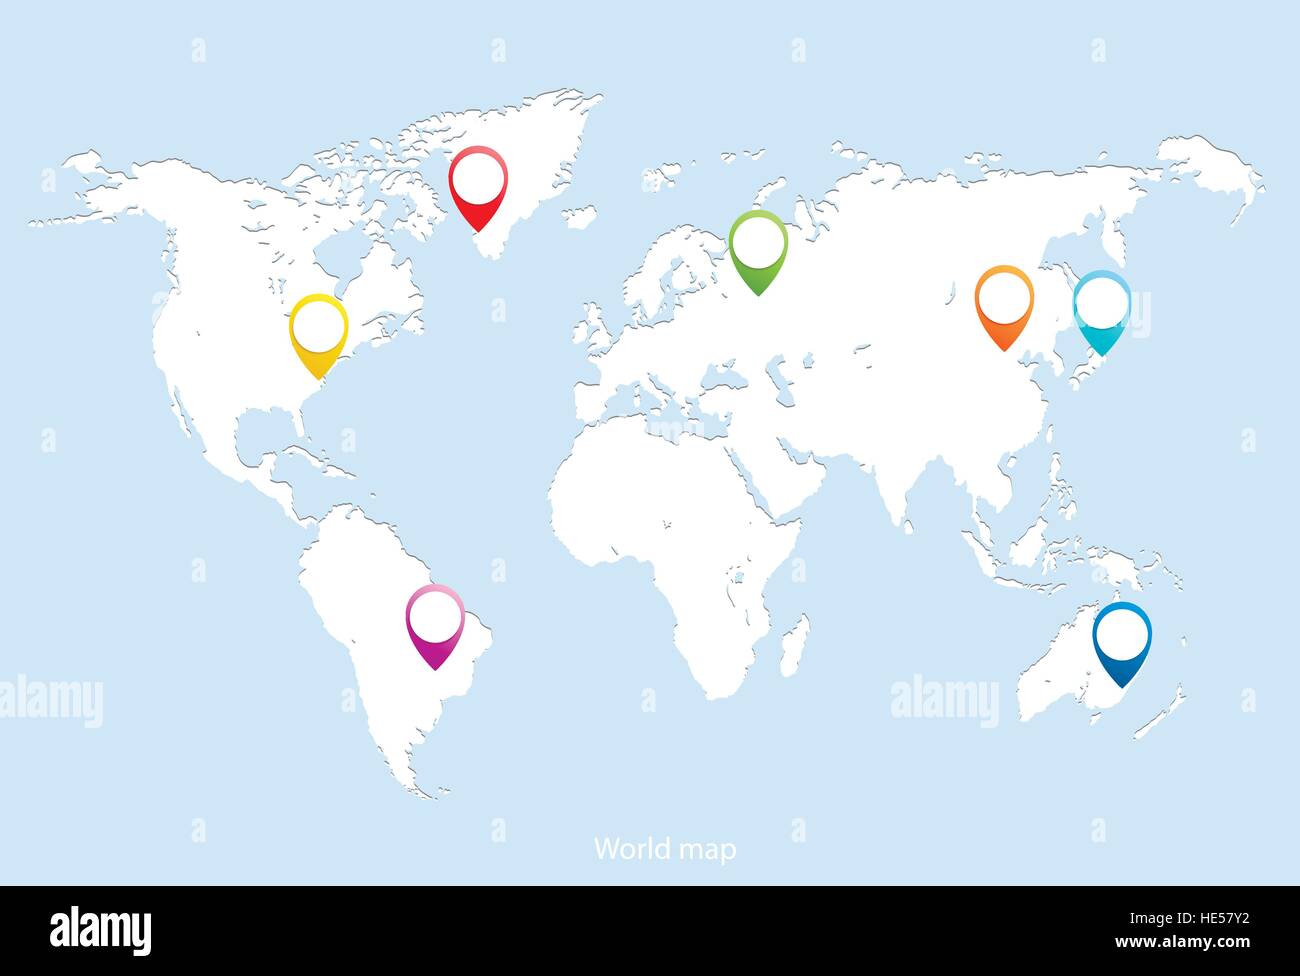 Leere weiße ähnliche Weltkarte isolierten auf blauen Hintergrund. Weltkarte mit Kontinenten markiert Hauptstädte einiger Länder. Flache Erde Graph W Stock Vektor